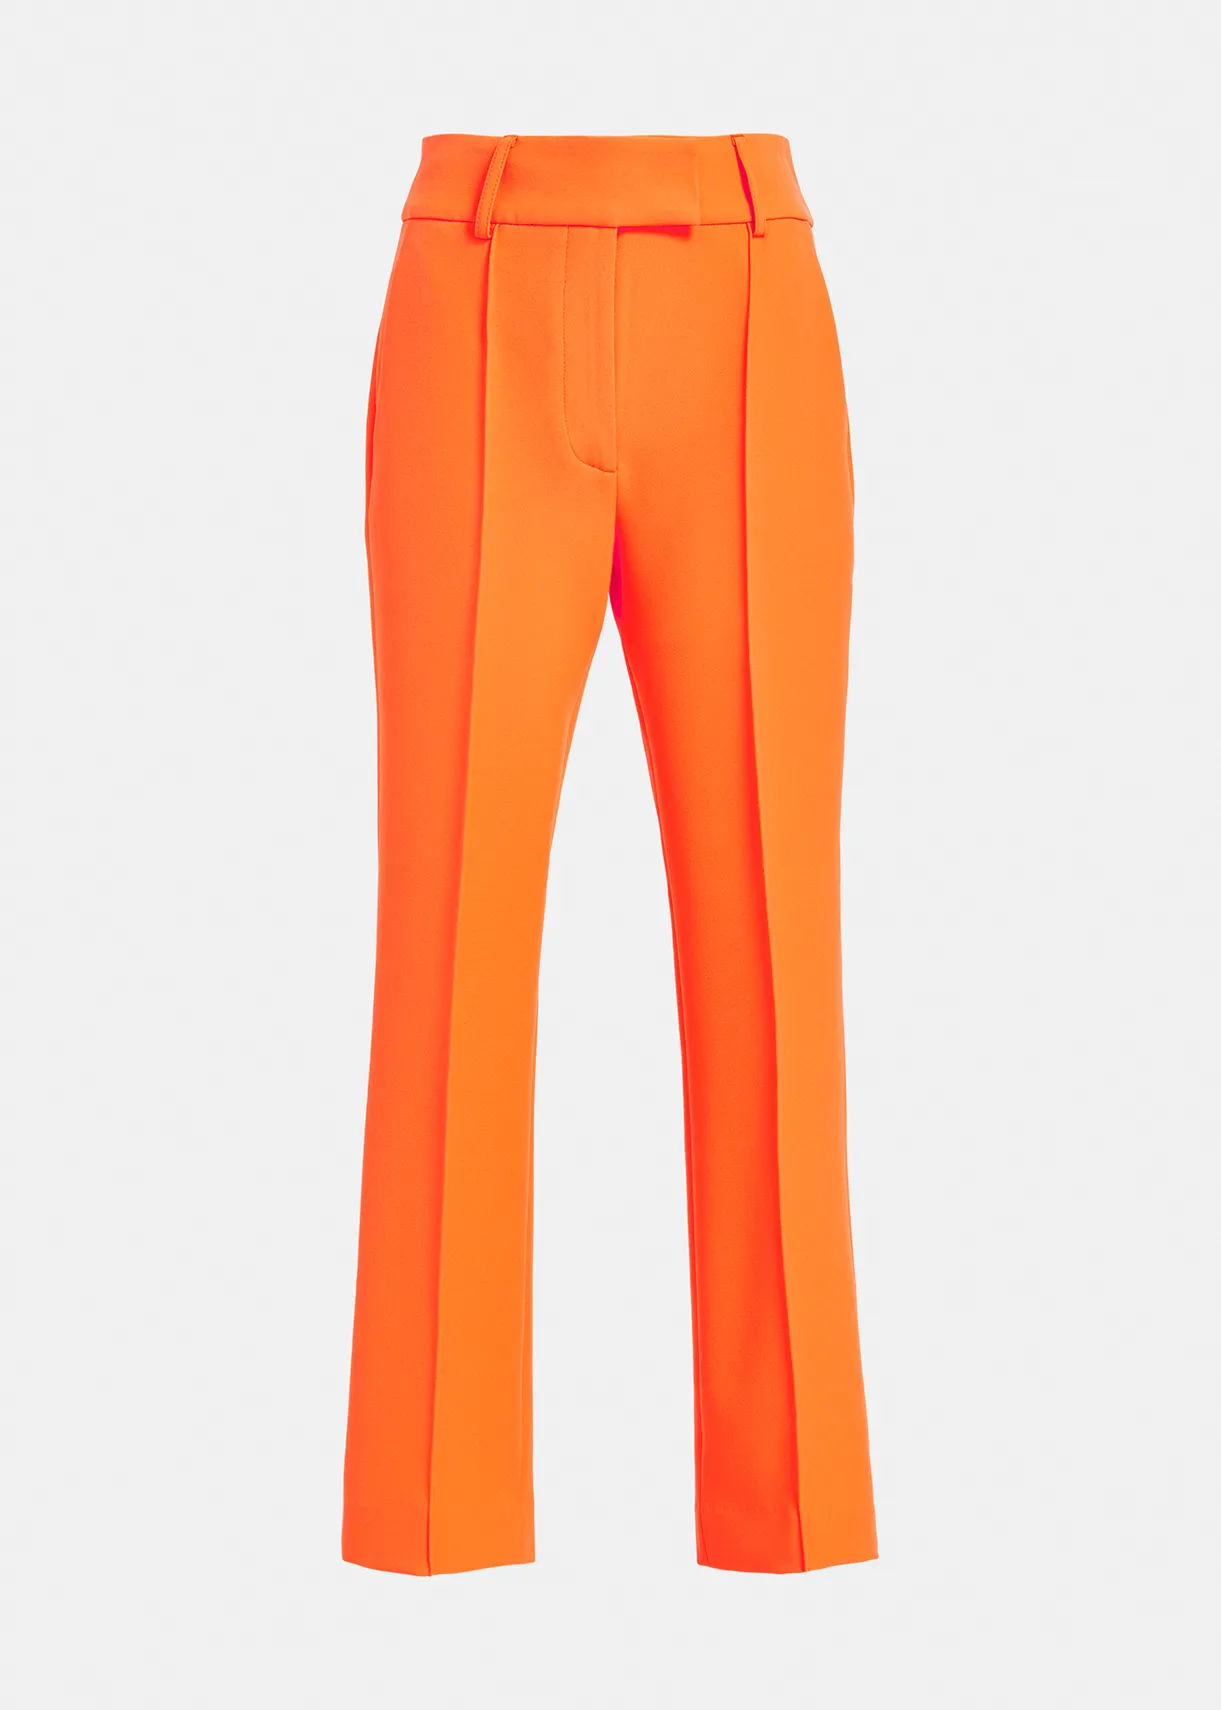 Pantalon orange sanguine en toile confort stretch taille élastique